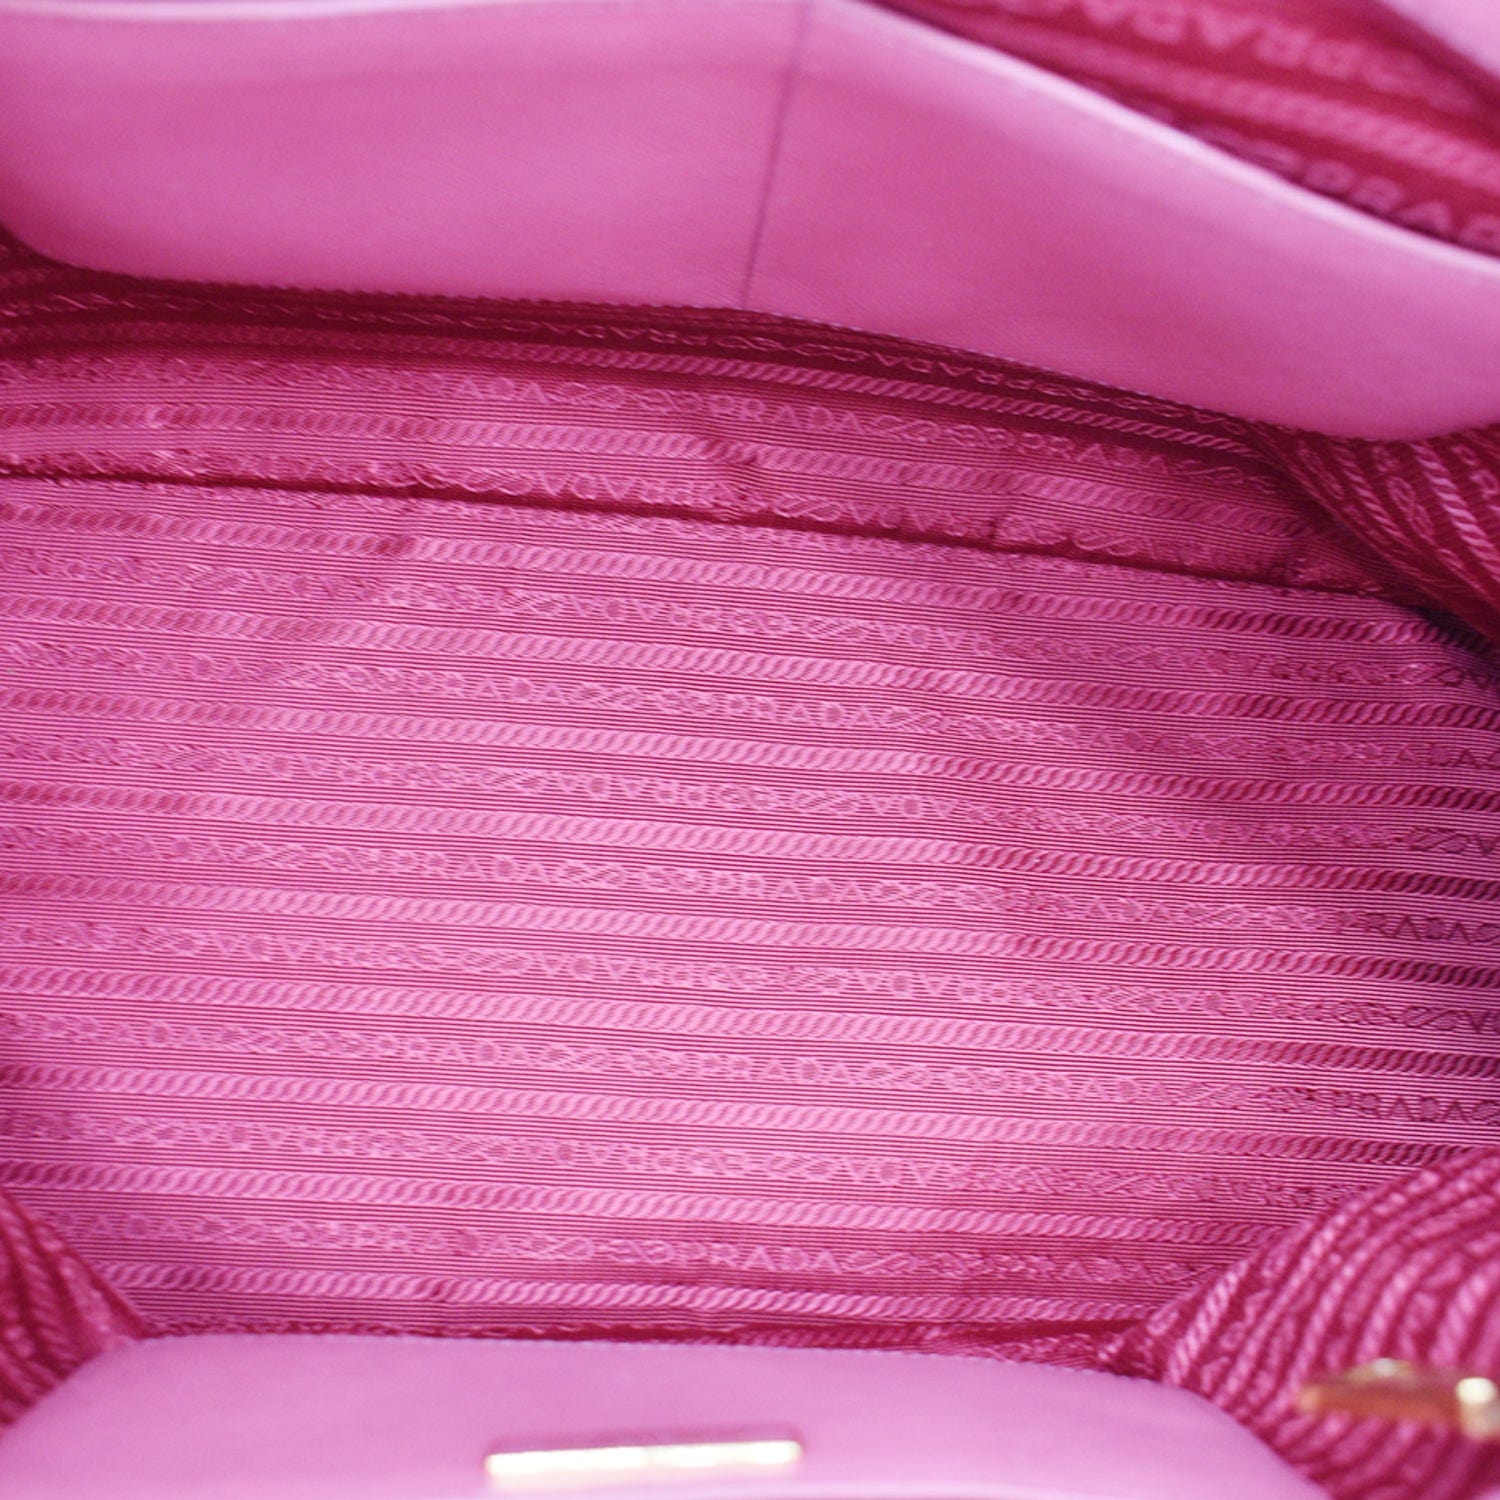 Prada Saffiano Lux Galleria Double Zip - Pink Totes, Handbags - PRA885955